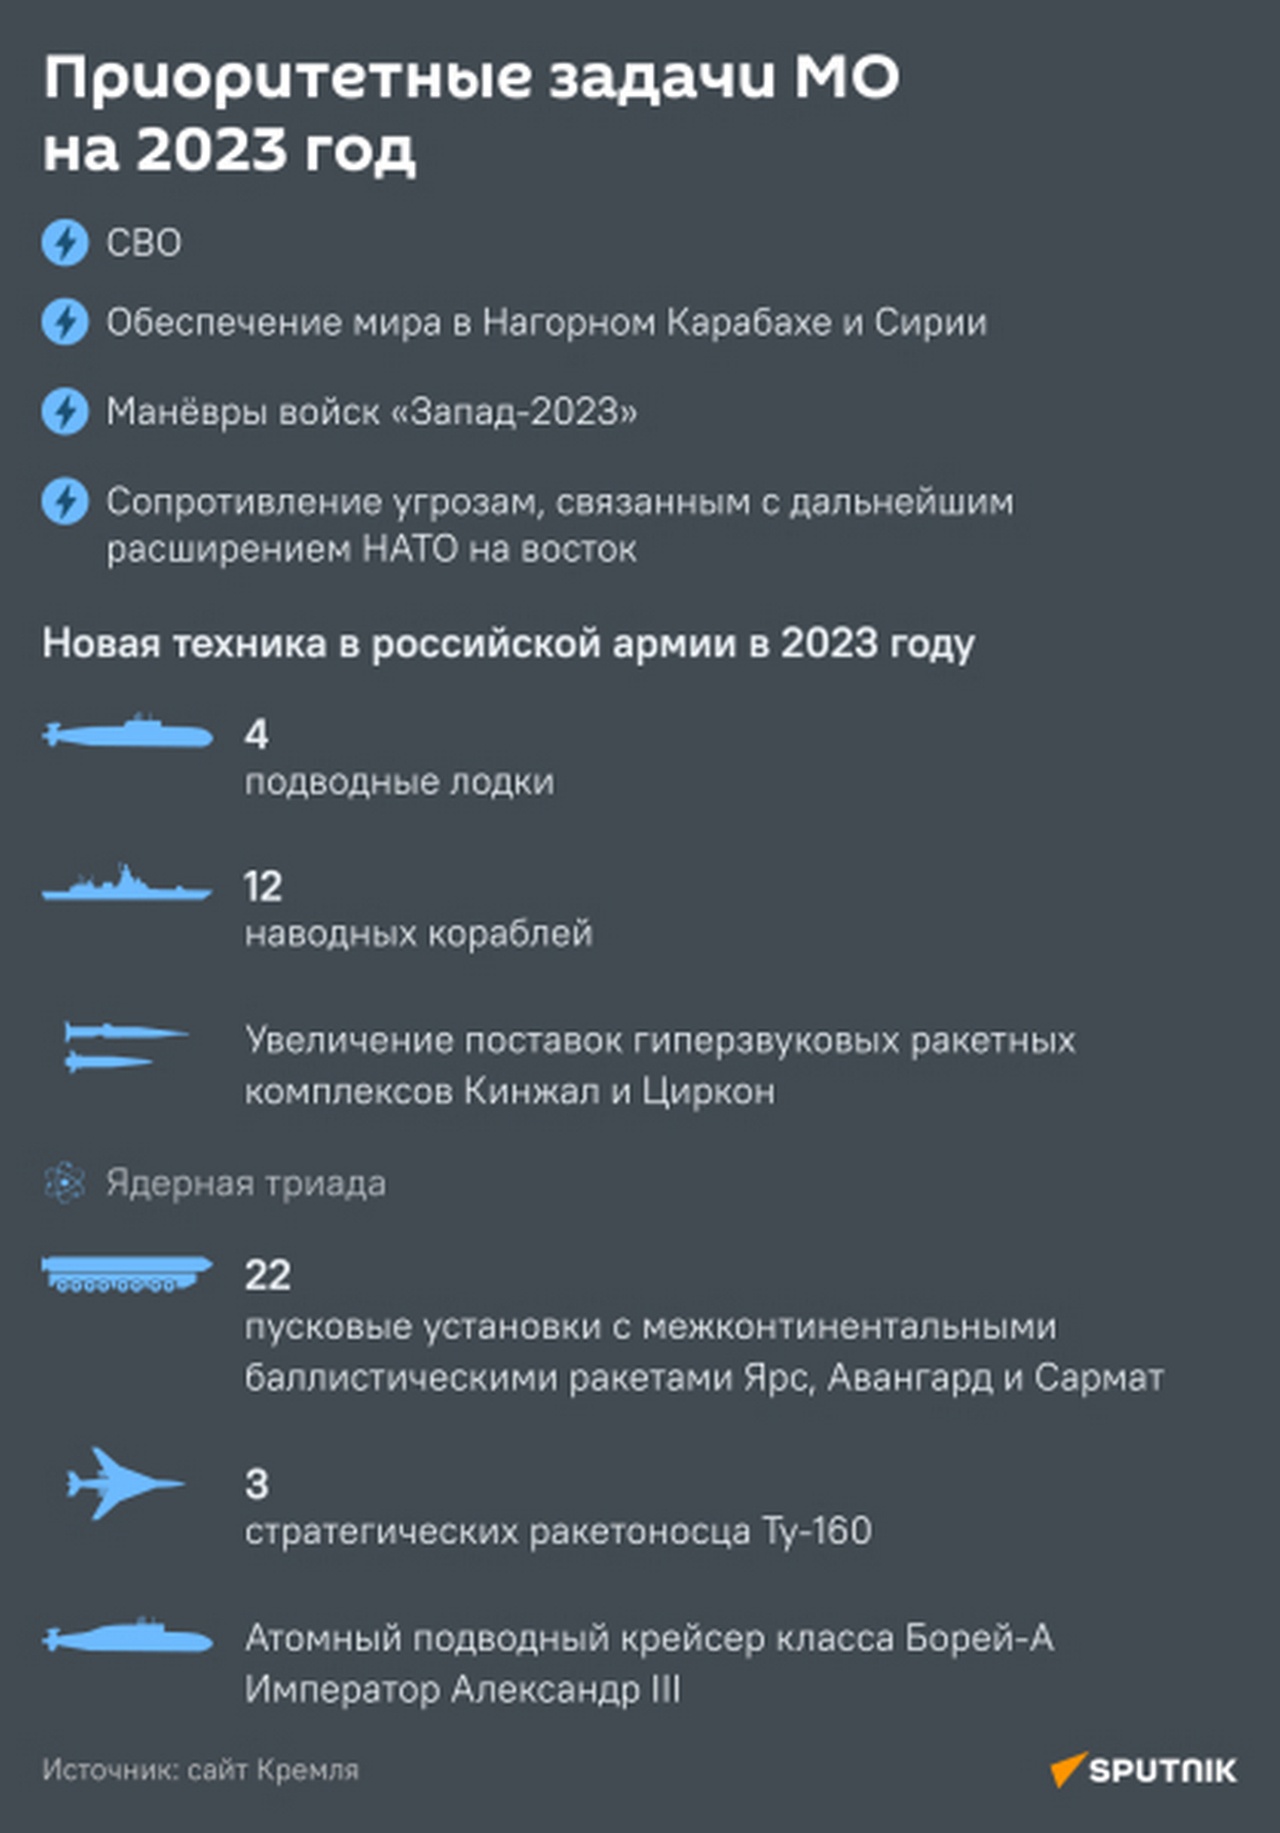 Новая техника в российской армии и приоритетные задачи МО РФ в 2023 году.